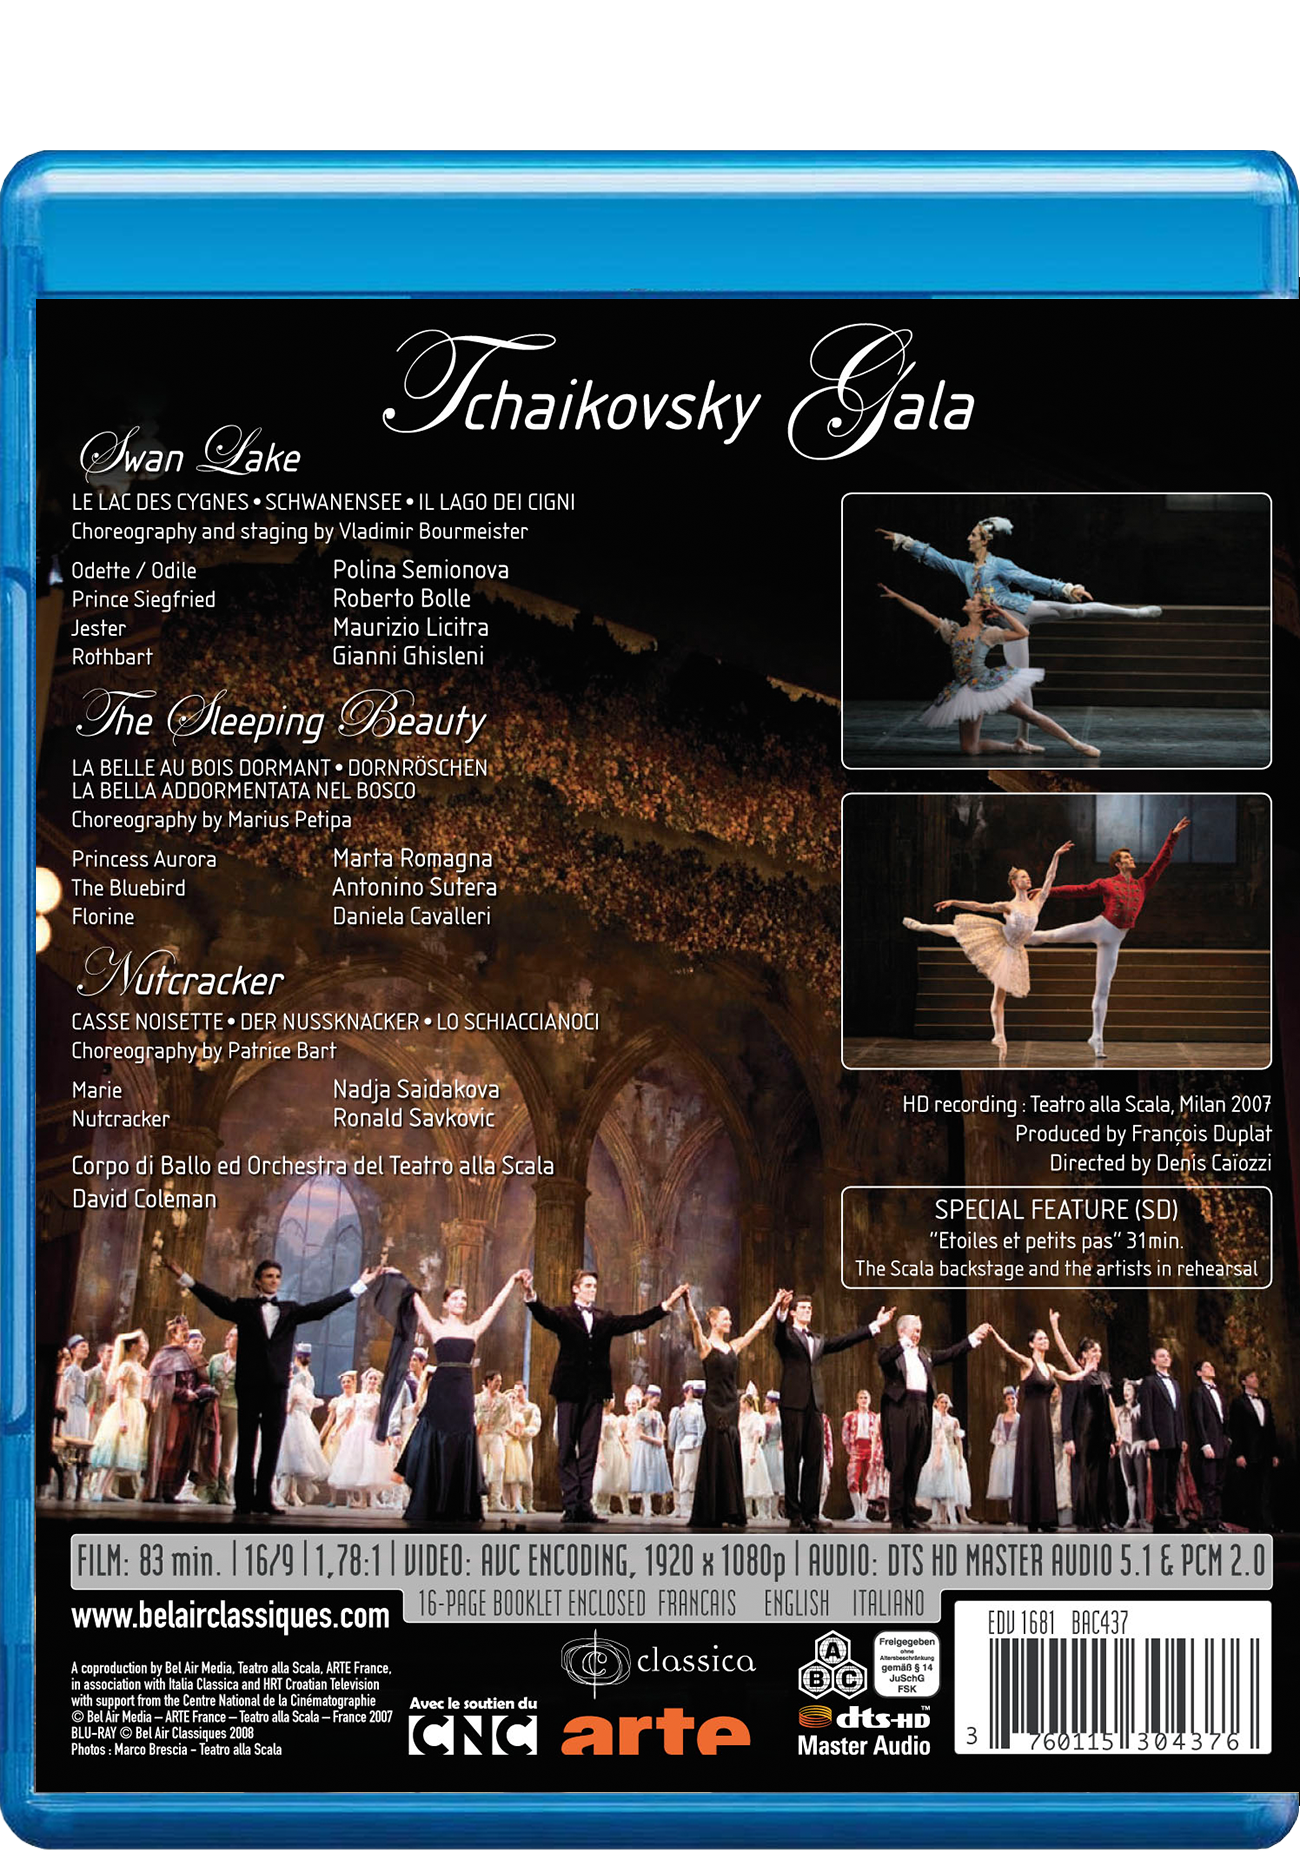 Tchaikovsky Gala / [DVD] [Import] 6g7v4d0